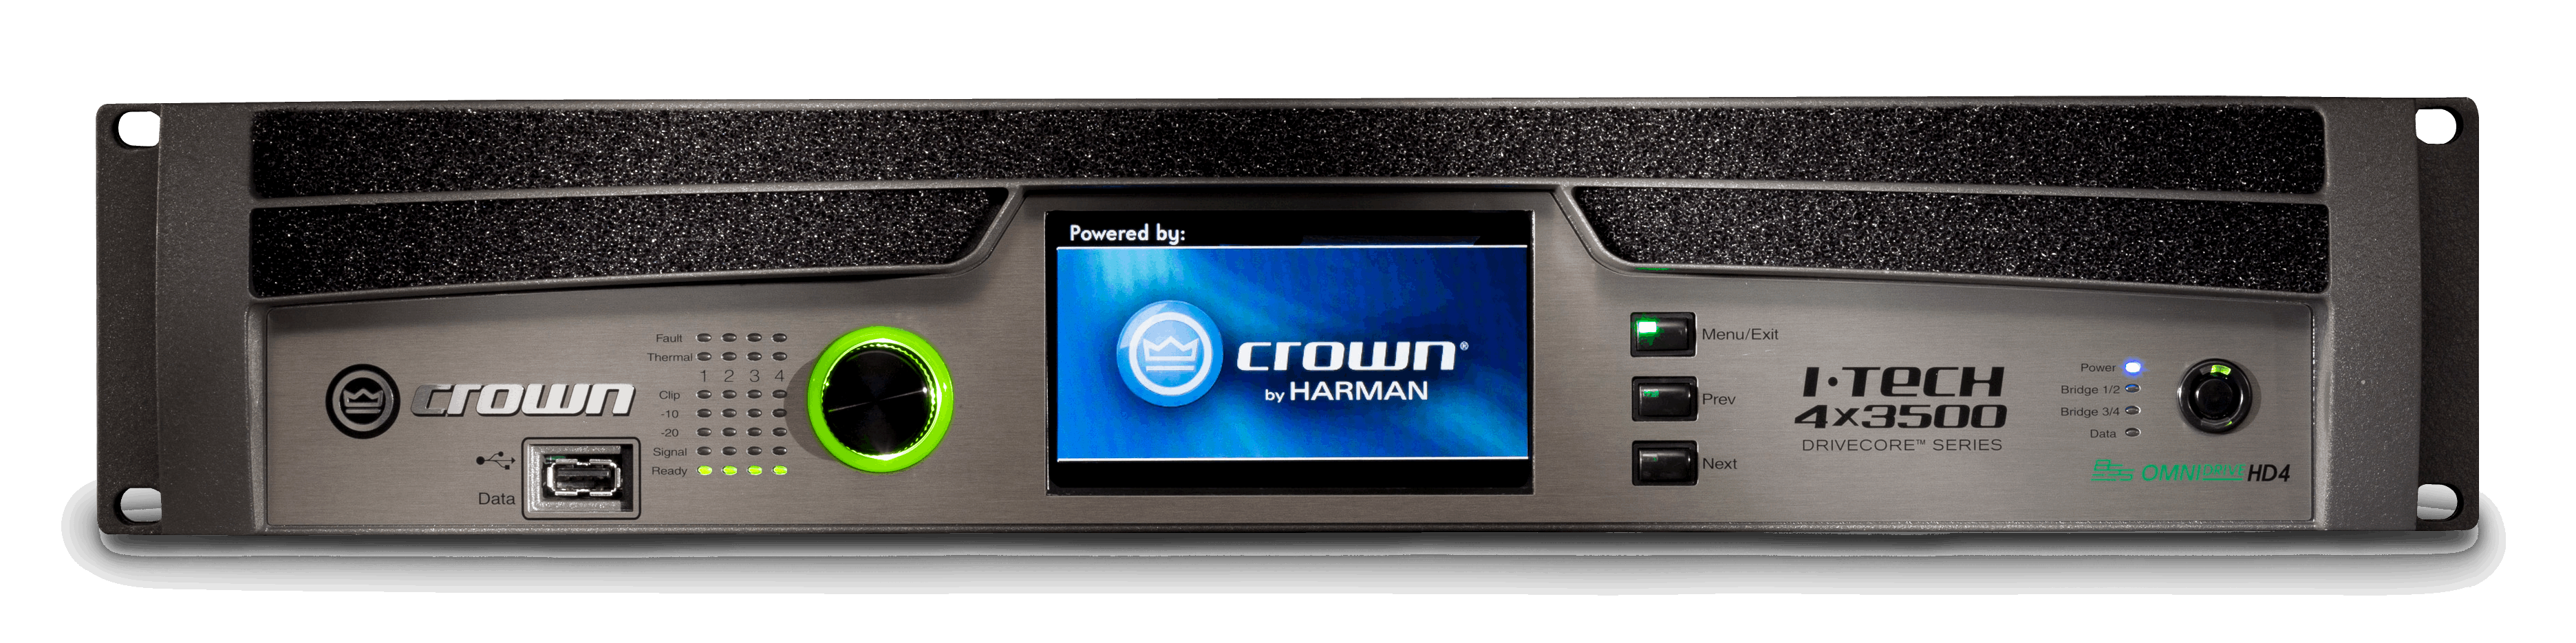 Crown I-Tech 4x3500HDS Power Amplifier With Speakon Connectors ( IT4x3500HDS / ITech4x3500HDS )